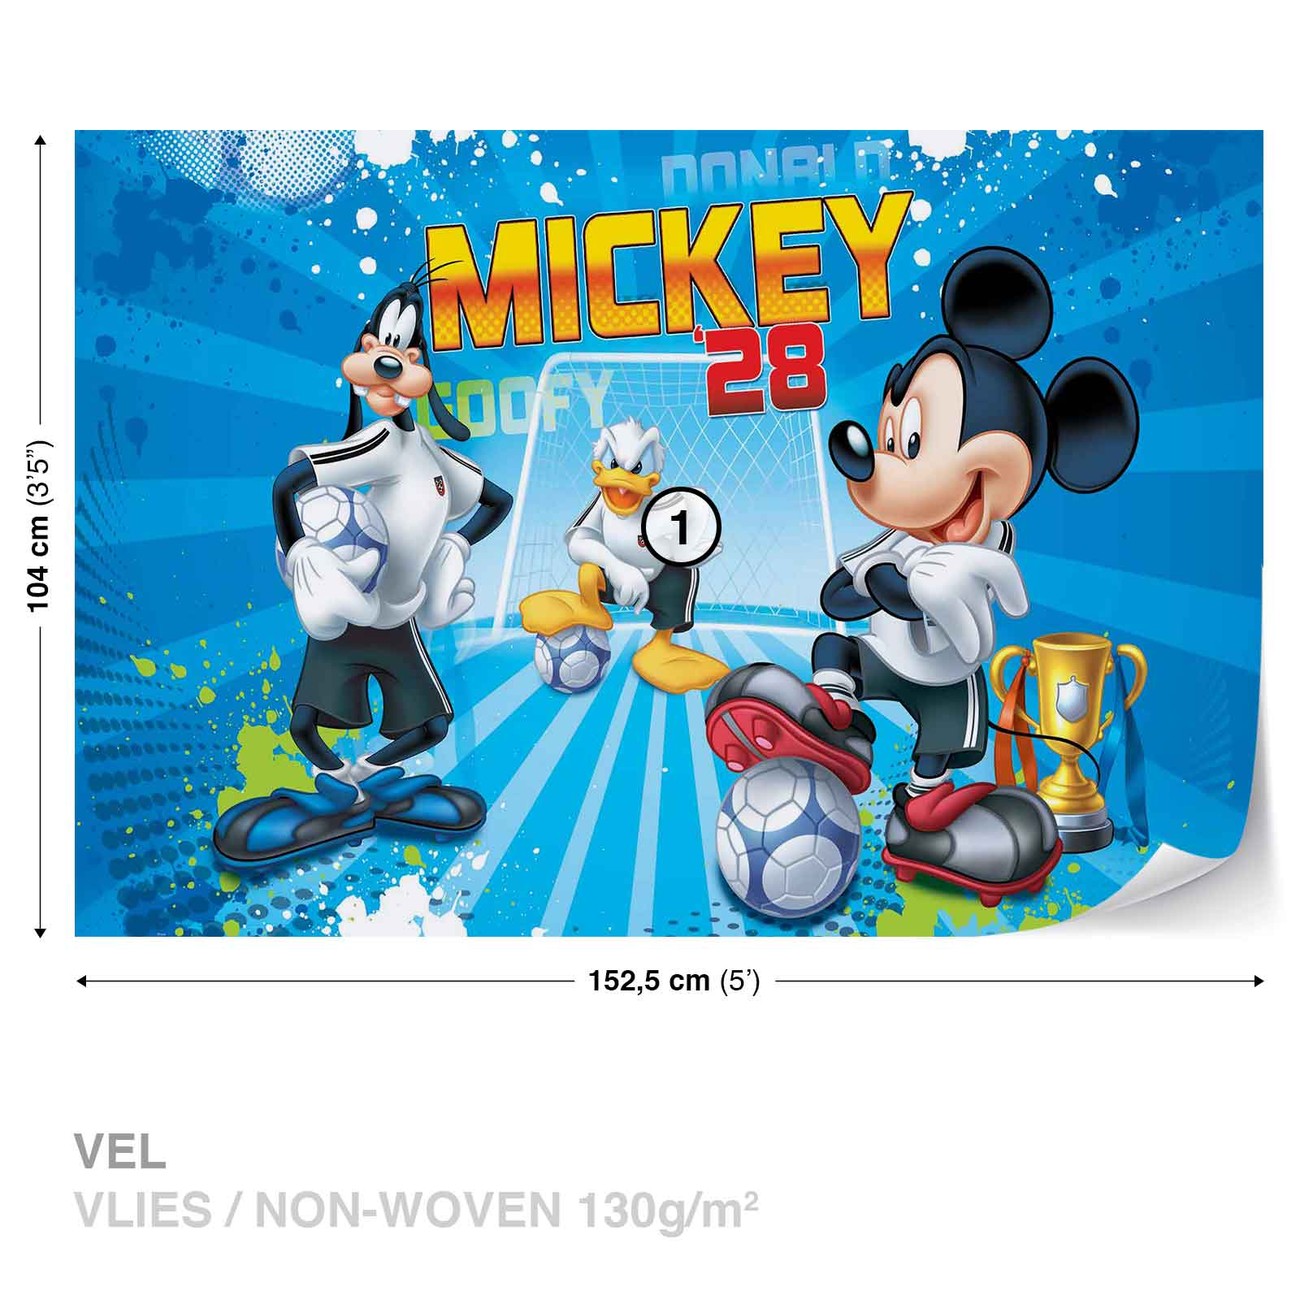 Disney Mickey Mouse Fotobehang Behang Bestel Nu Op Europosters Nl